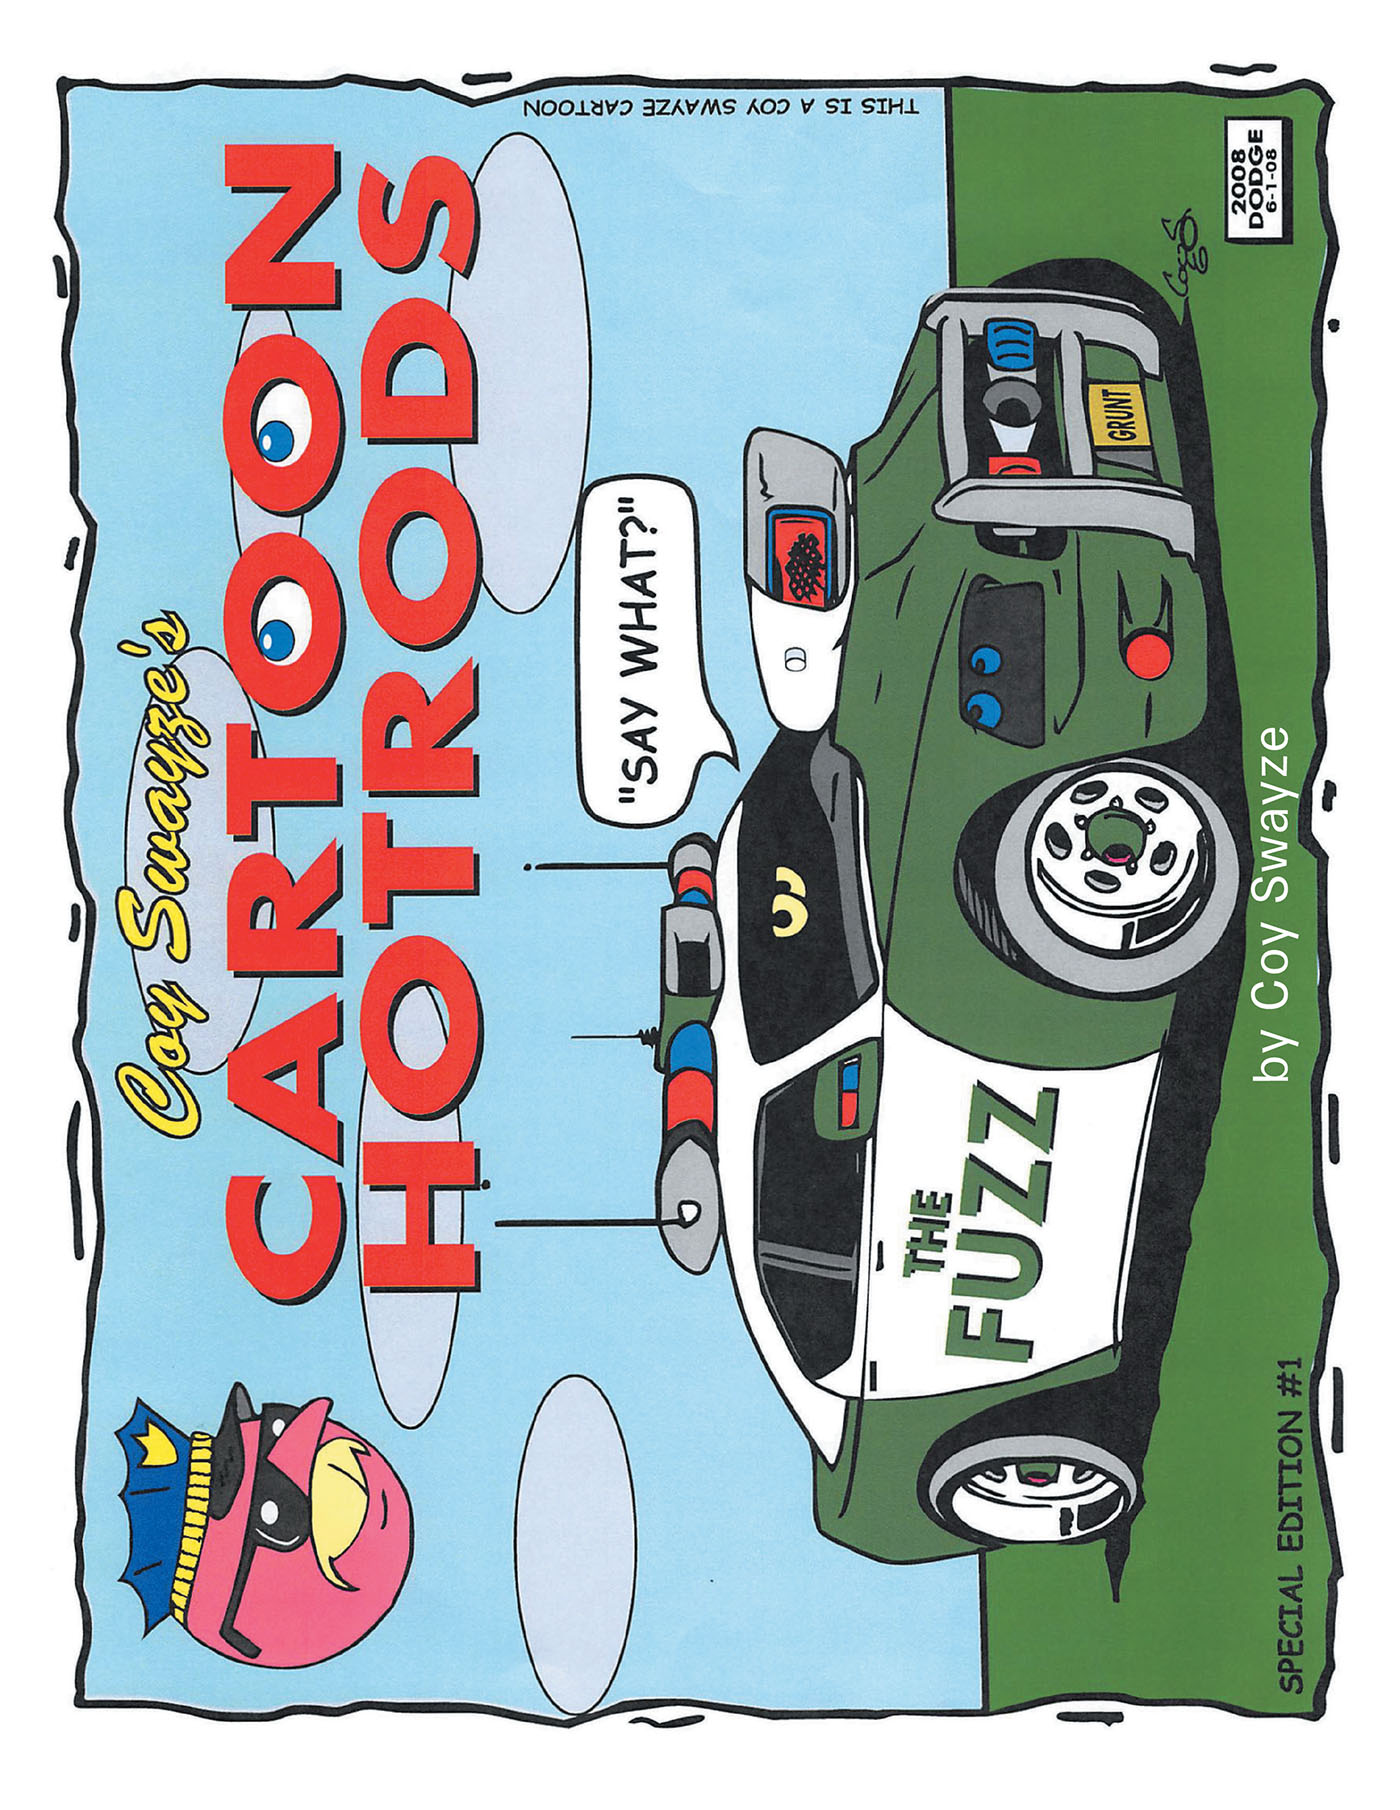 Coy Swayze's Cartoon Hotrods Cover Image